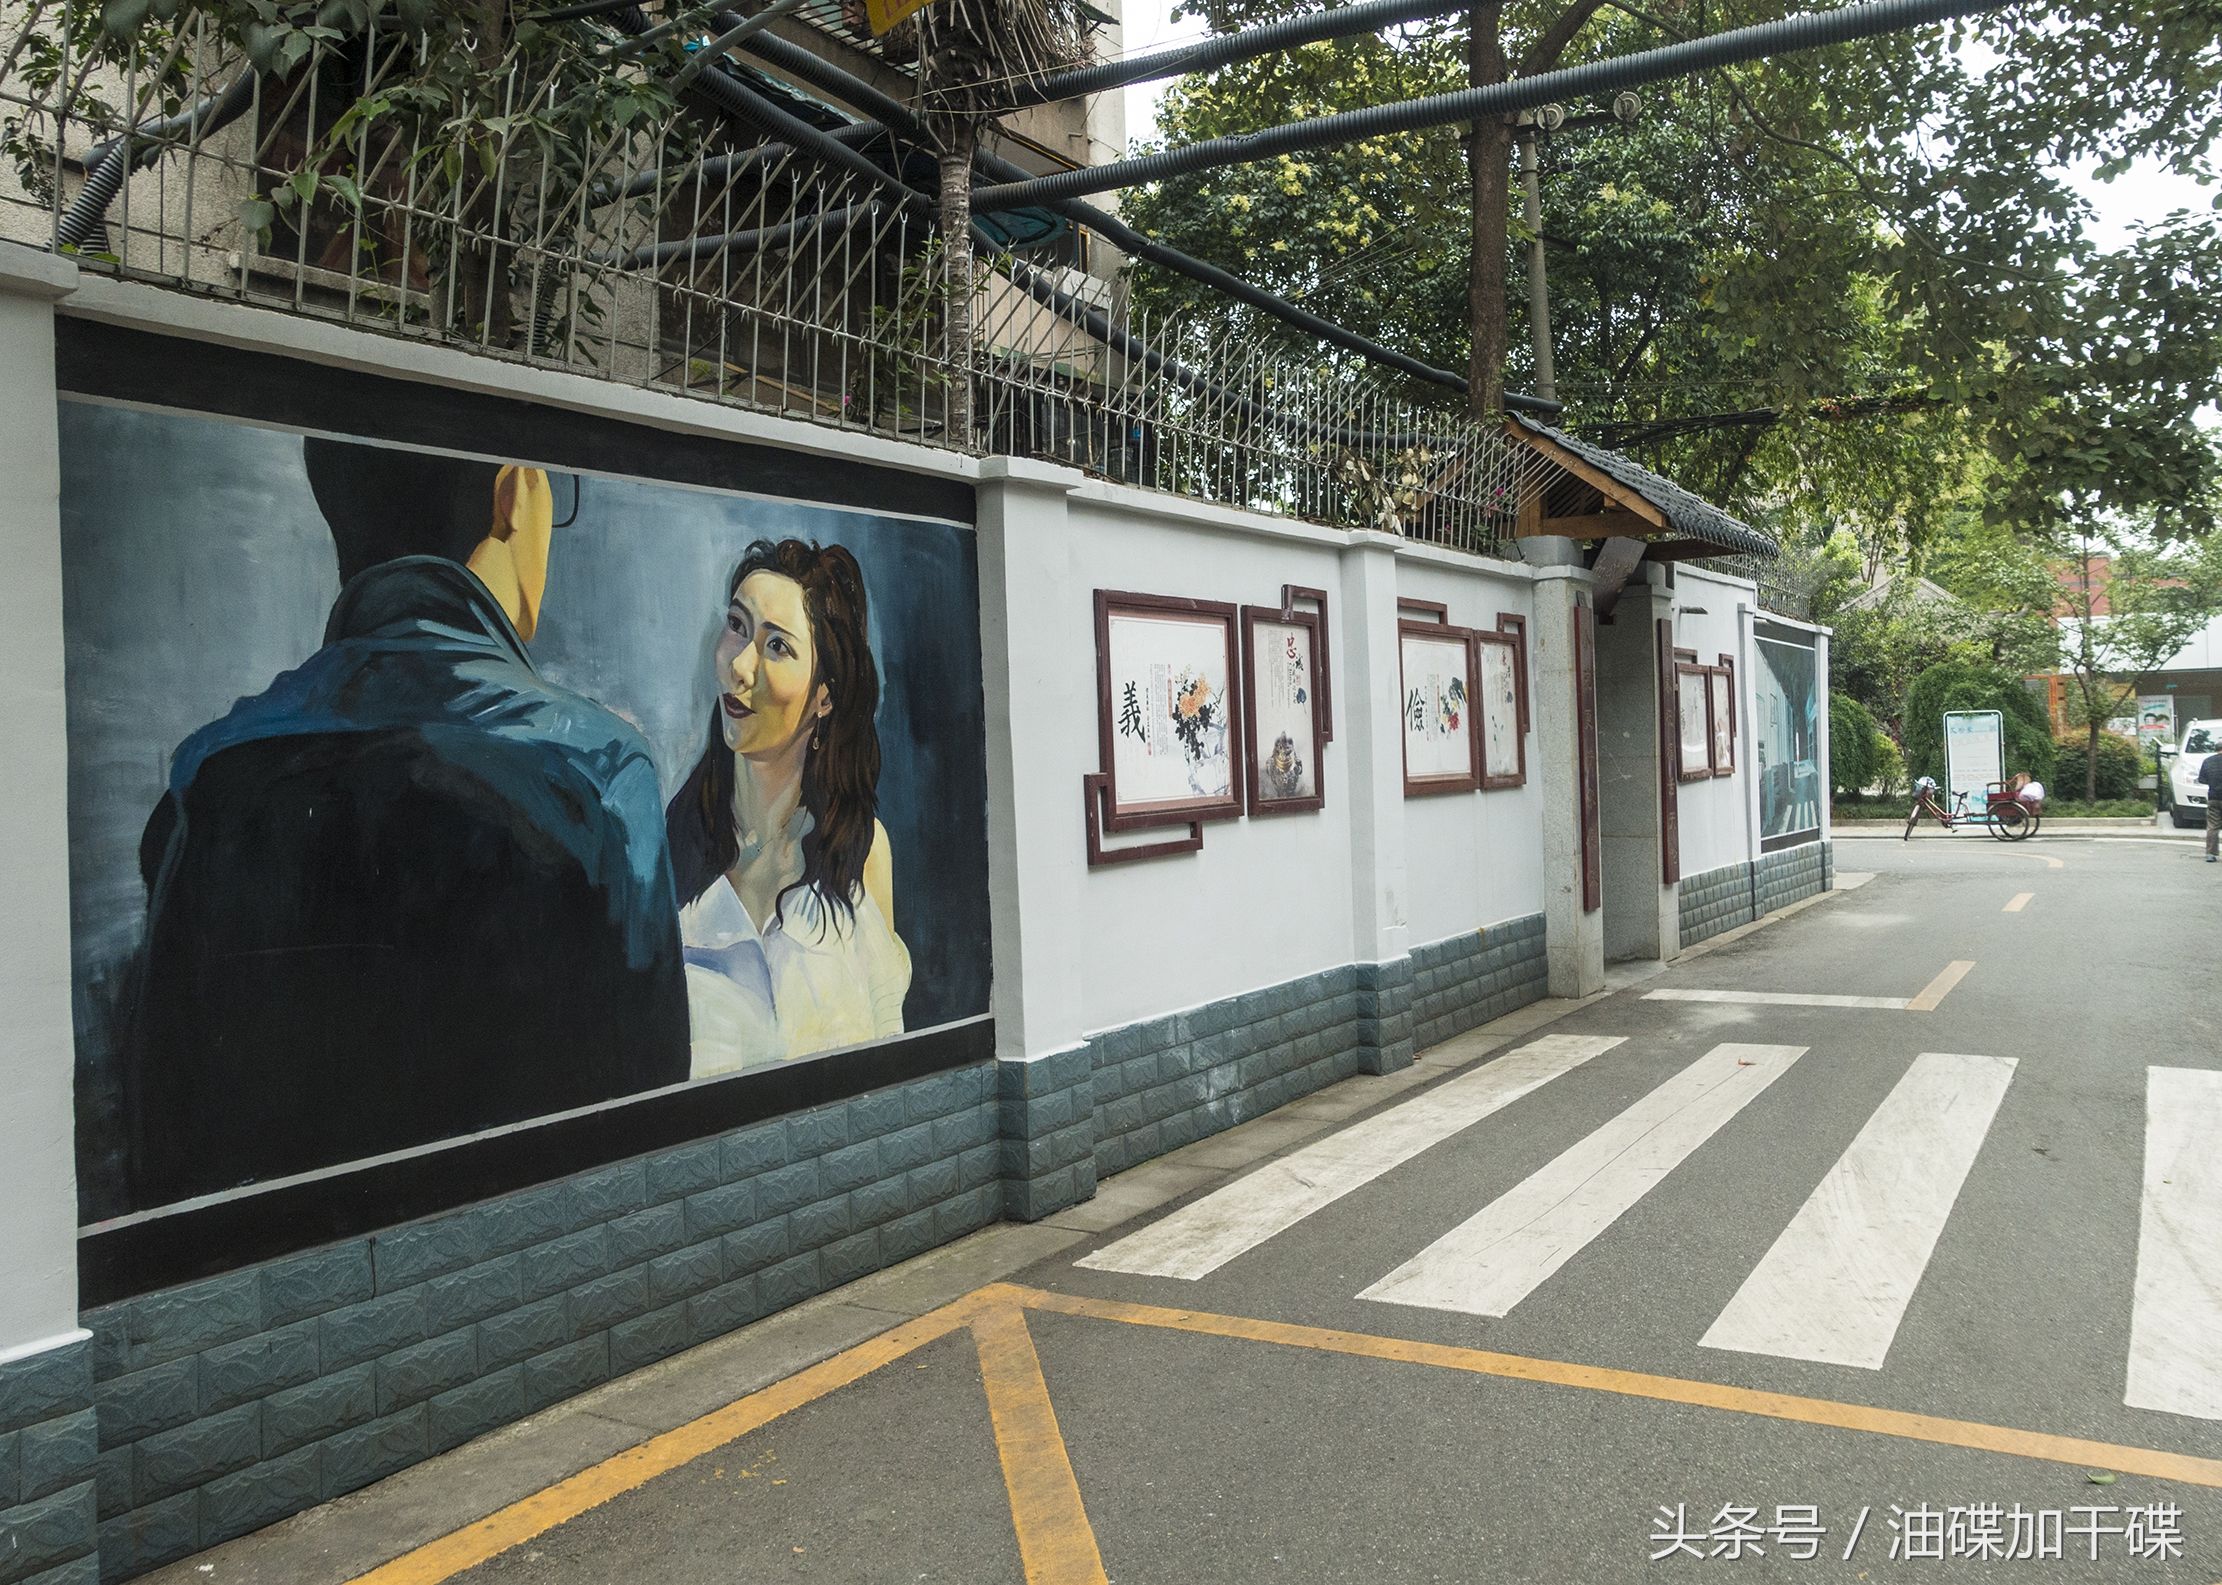 成都玉林网红街道增新景《前任3》拍摄地绘